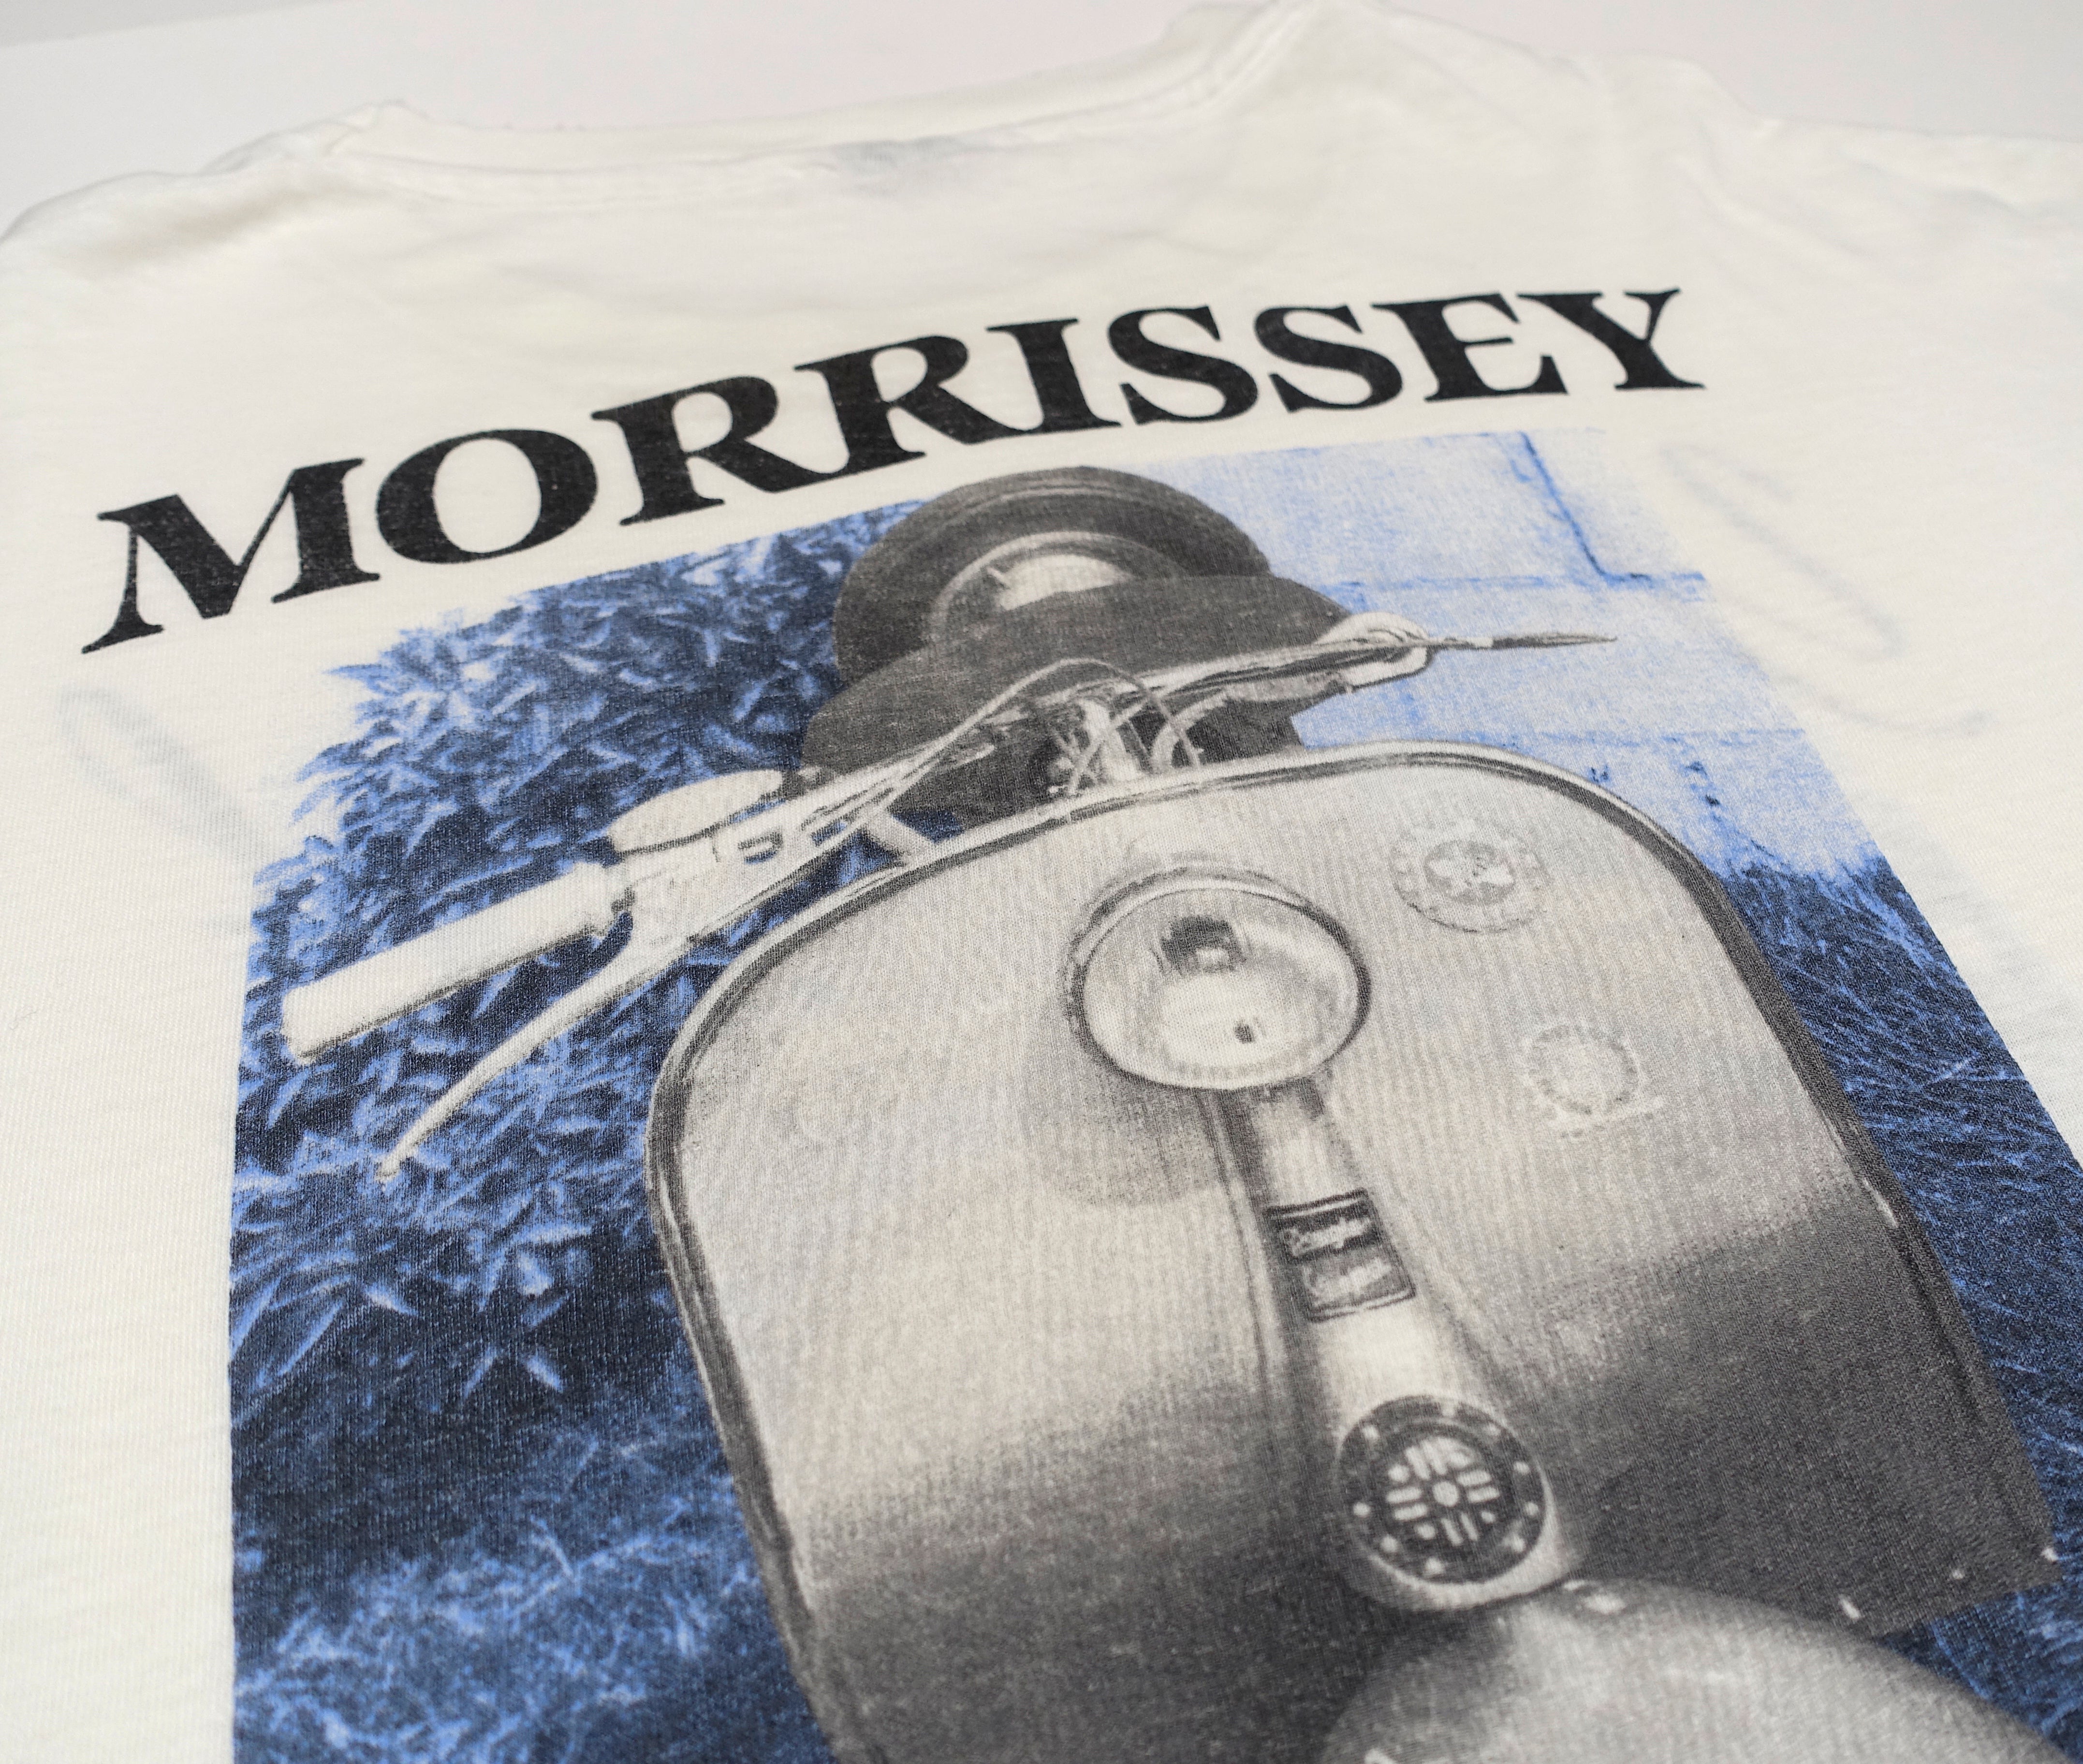 Morrissey - Vespa / Your Arsenal 1992 Tour Shirt Size XL